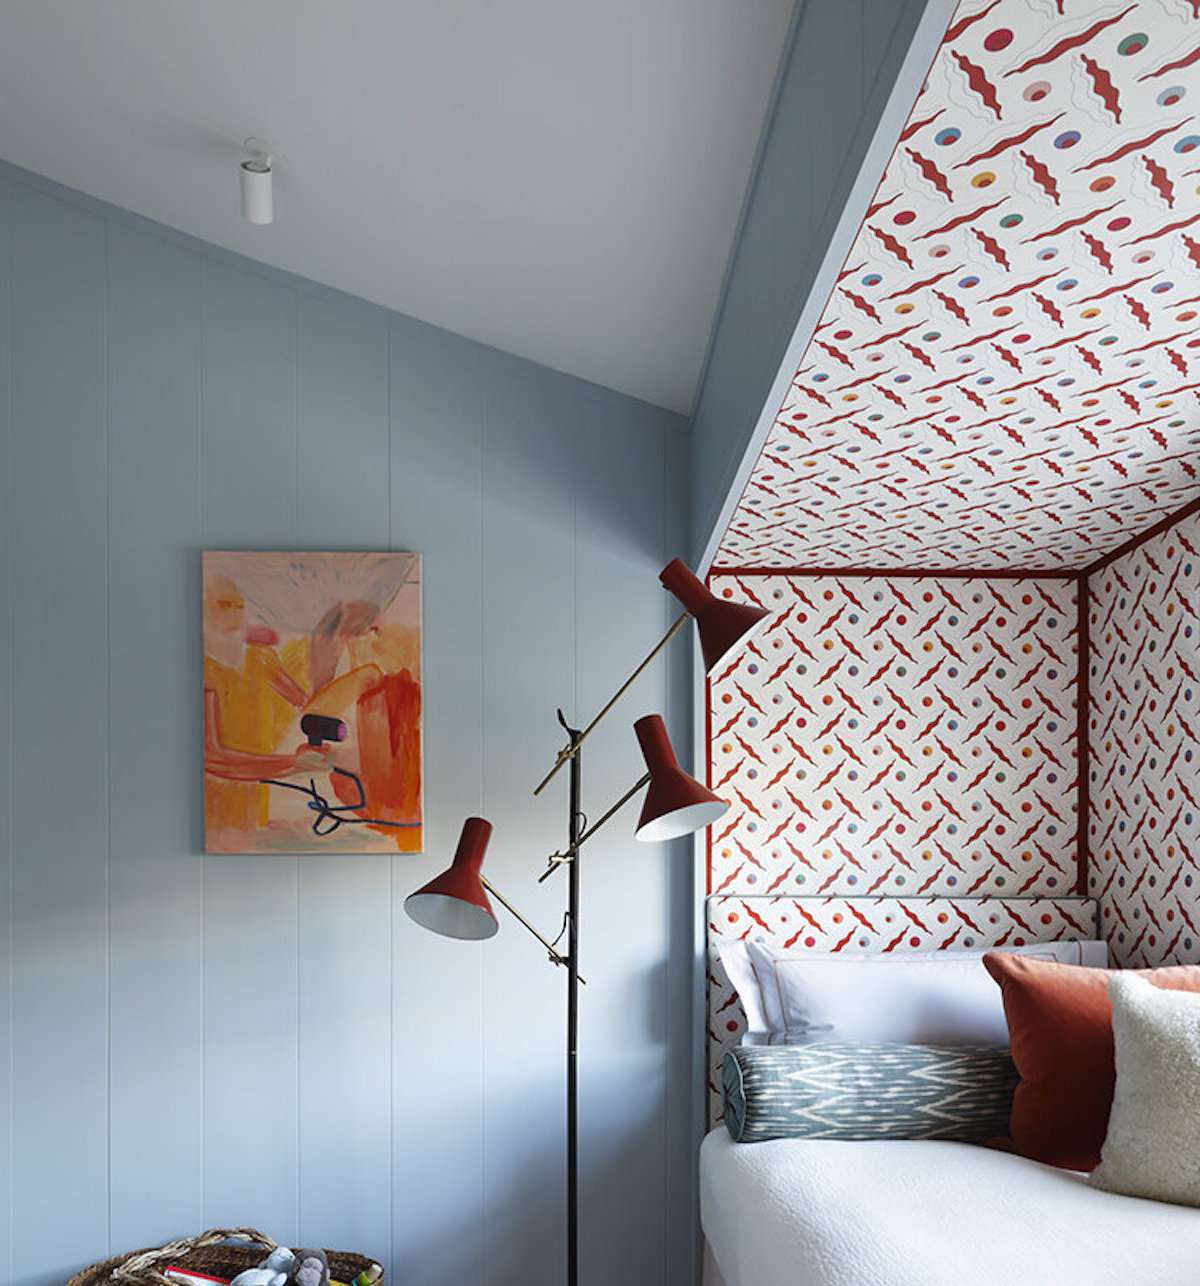 Schlafzimmer mit hellblauen Wänden, rot-weißes Muster in einer Ecke mit Bett, moderne rote Lampe